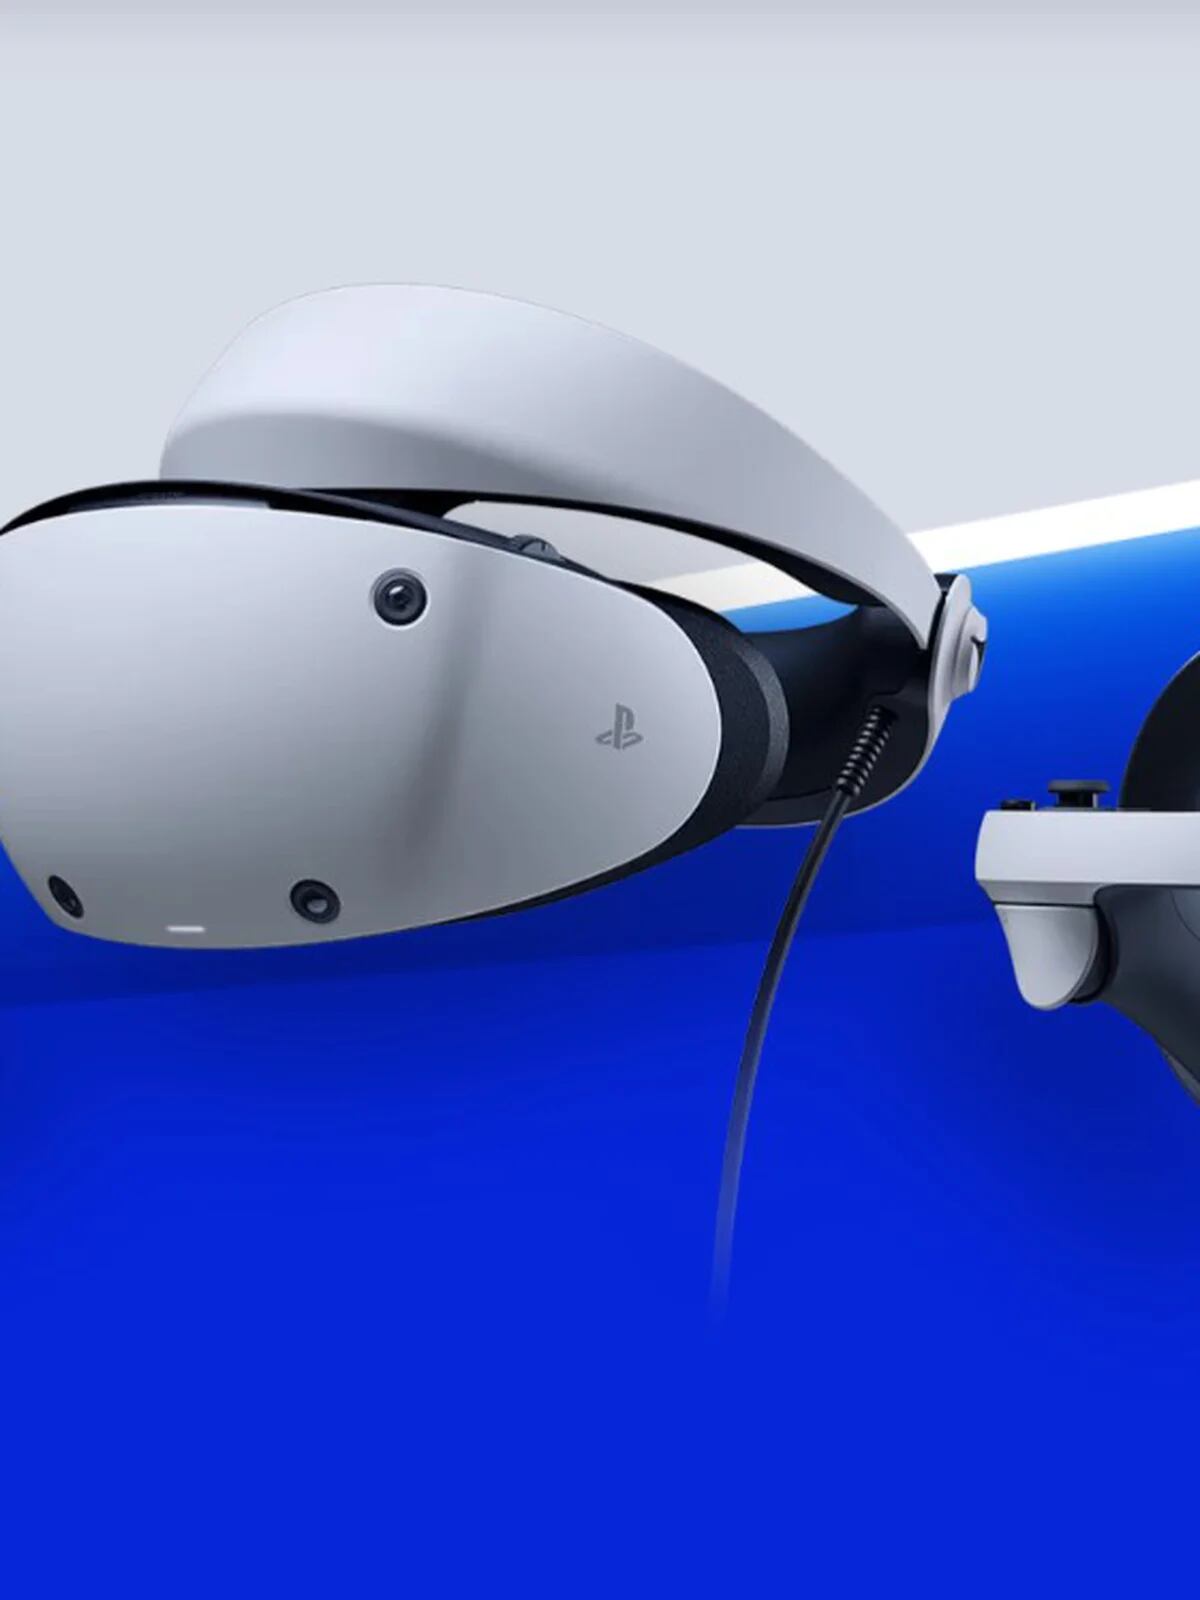 Las gafas de realidad virtual PlayStation VR2 están más rebajadas que nunca  y vienen con juego en este suculento pack